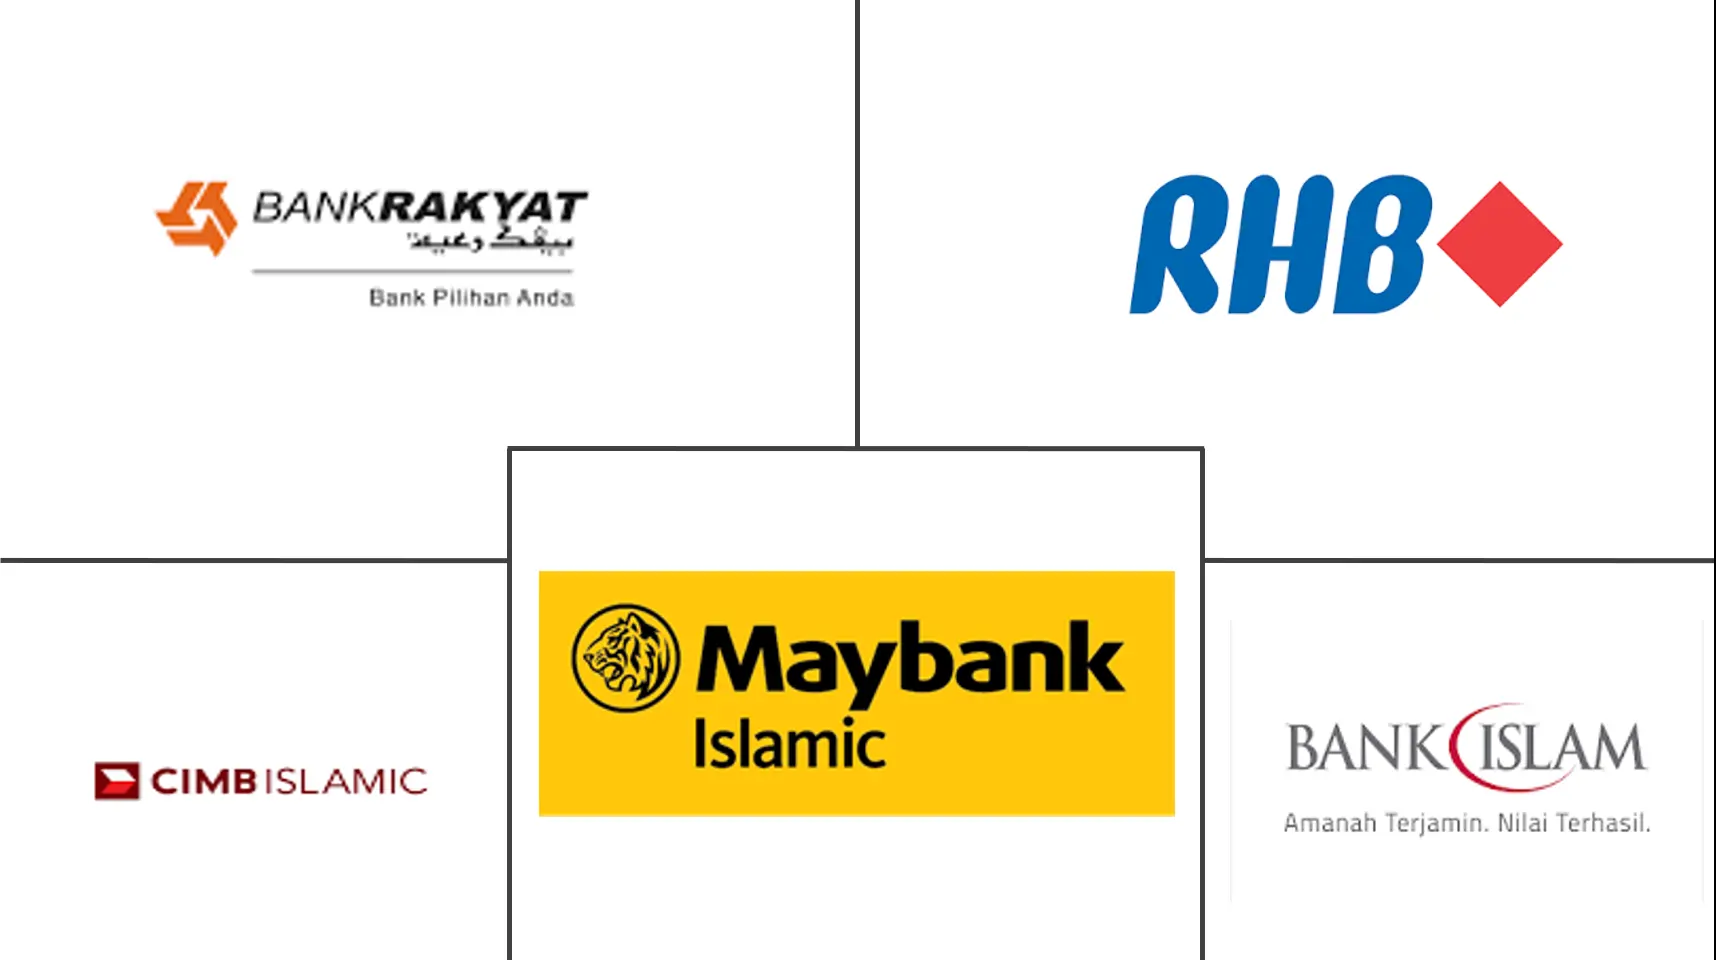 亚太伊斯兰金融市场主要参与者